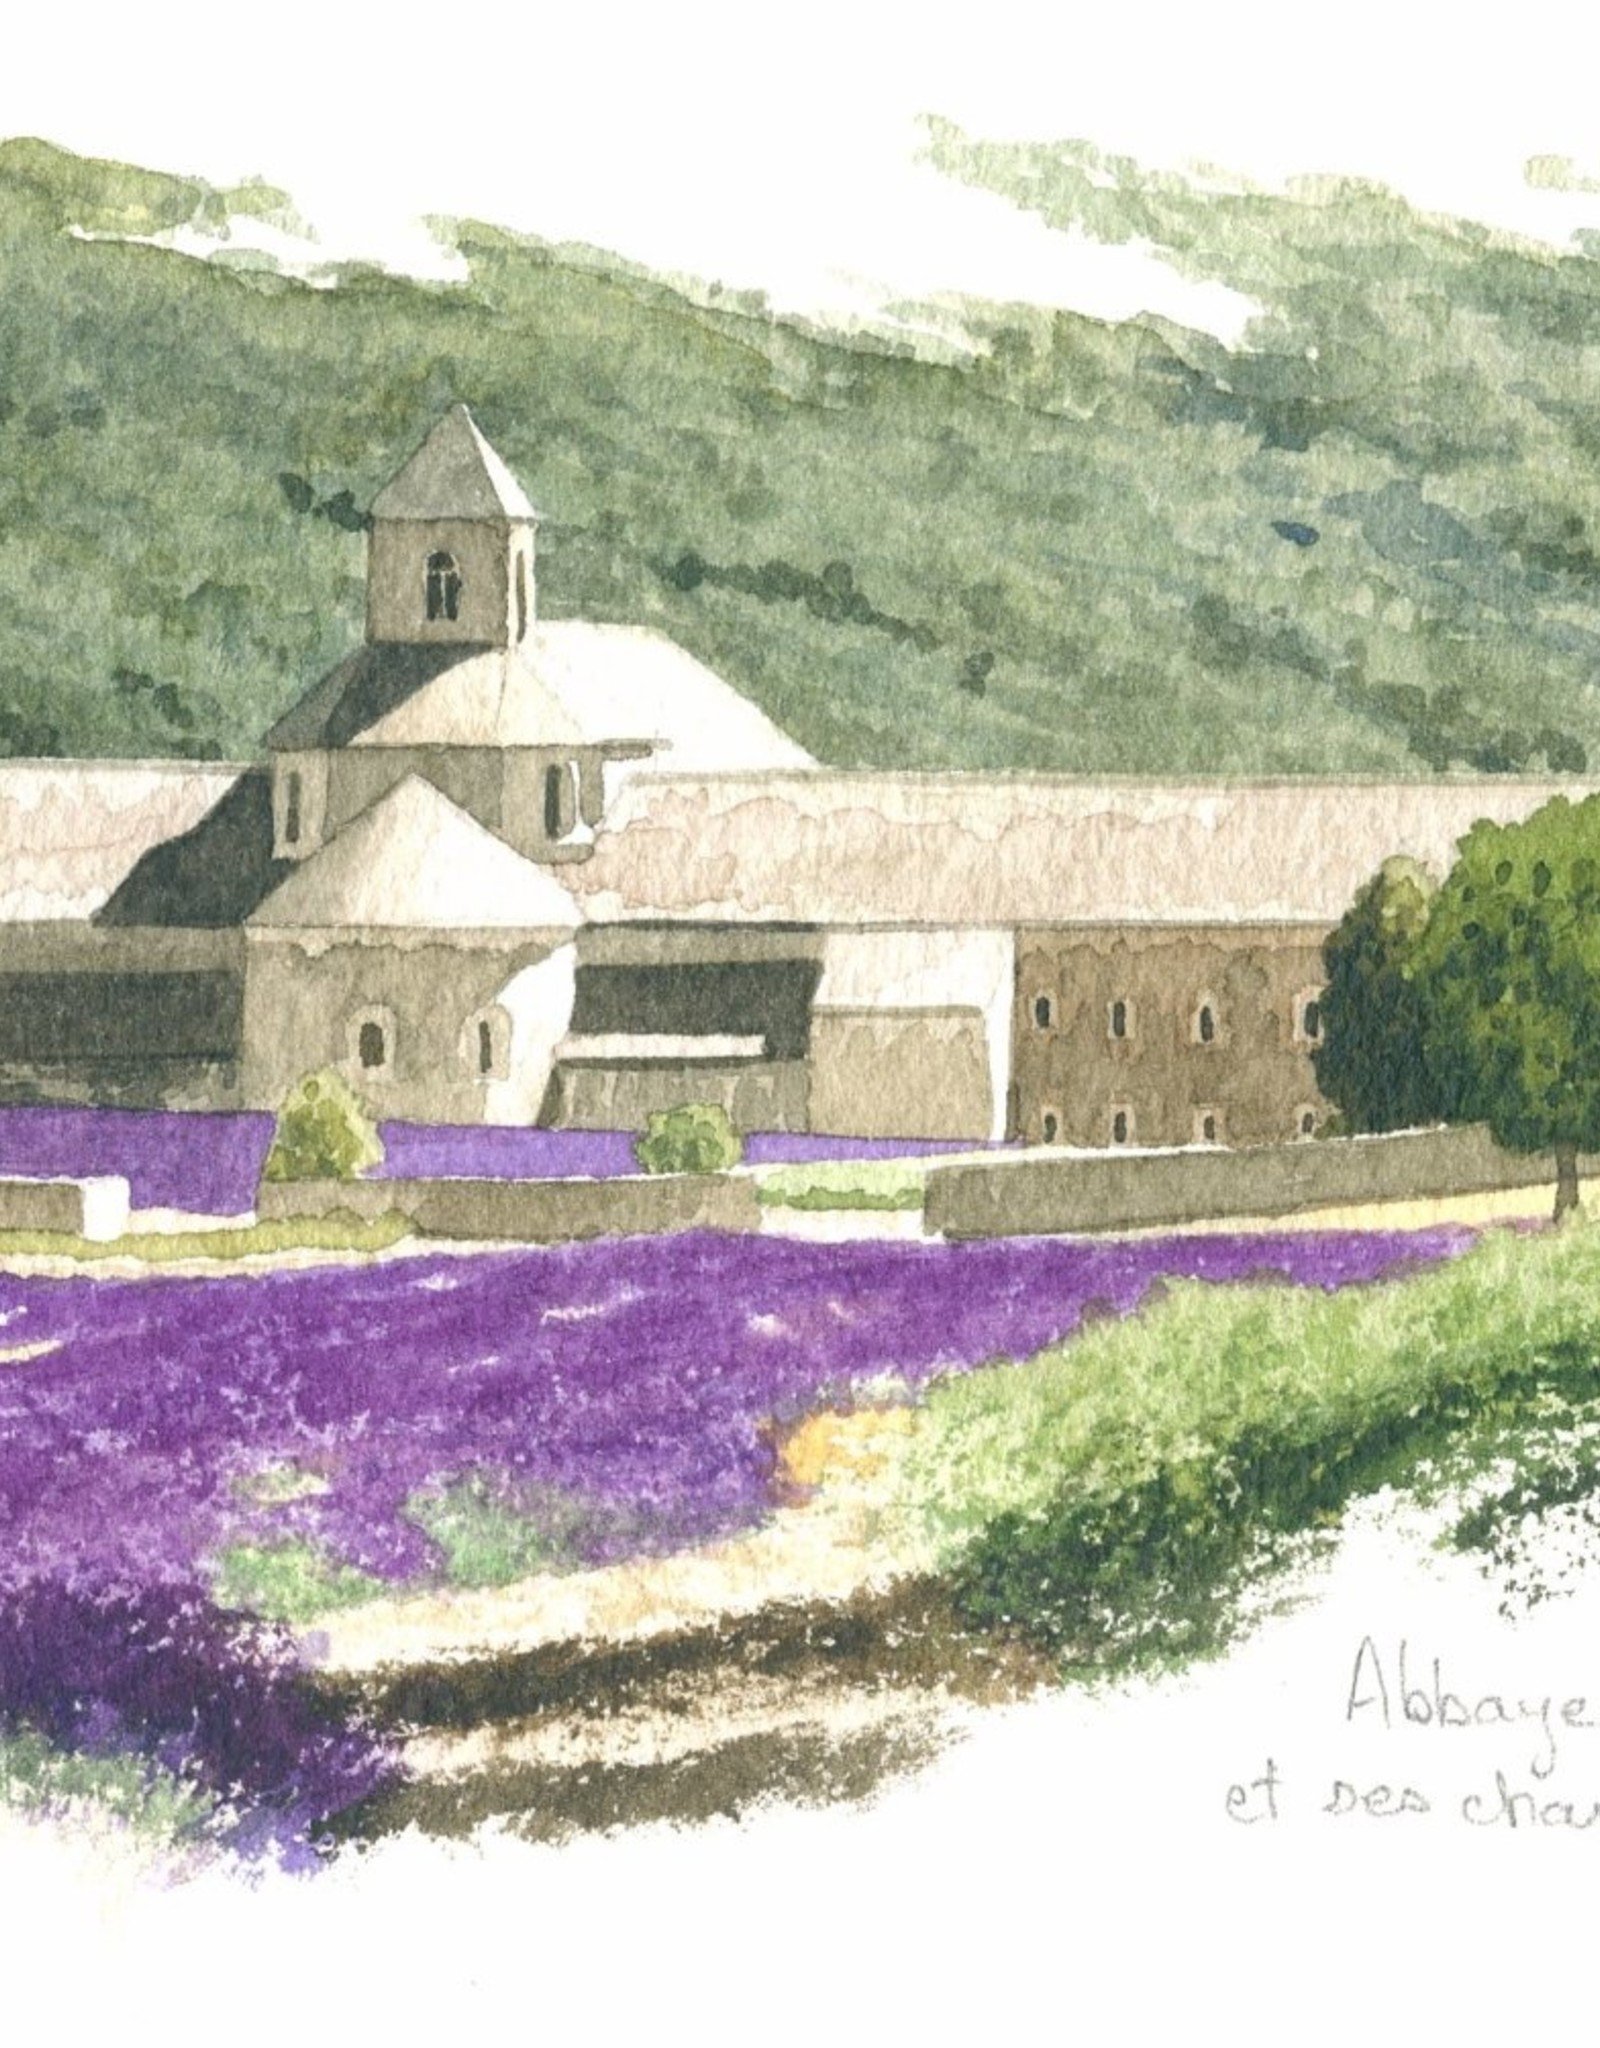 Abbaye de Senanque Greeting Card - 8 1/4" x 4 1/4"